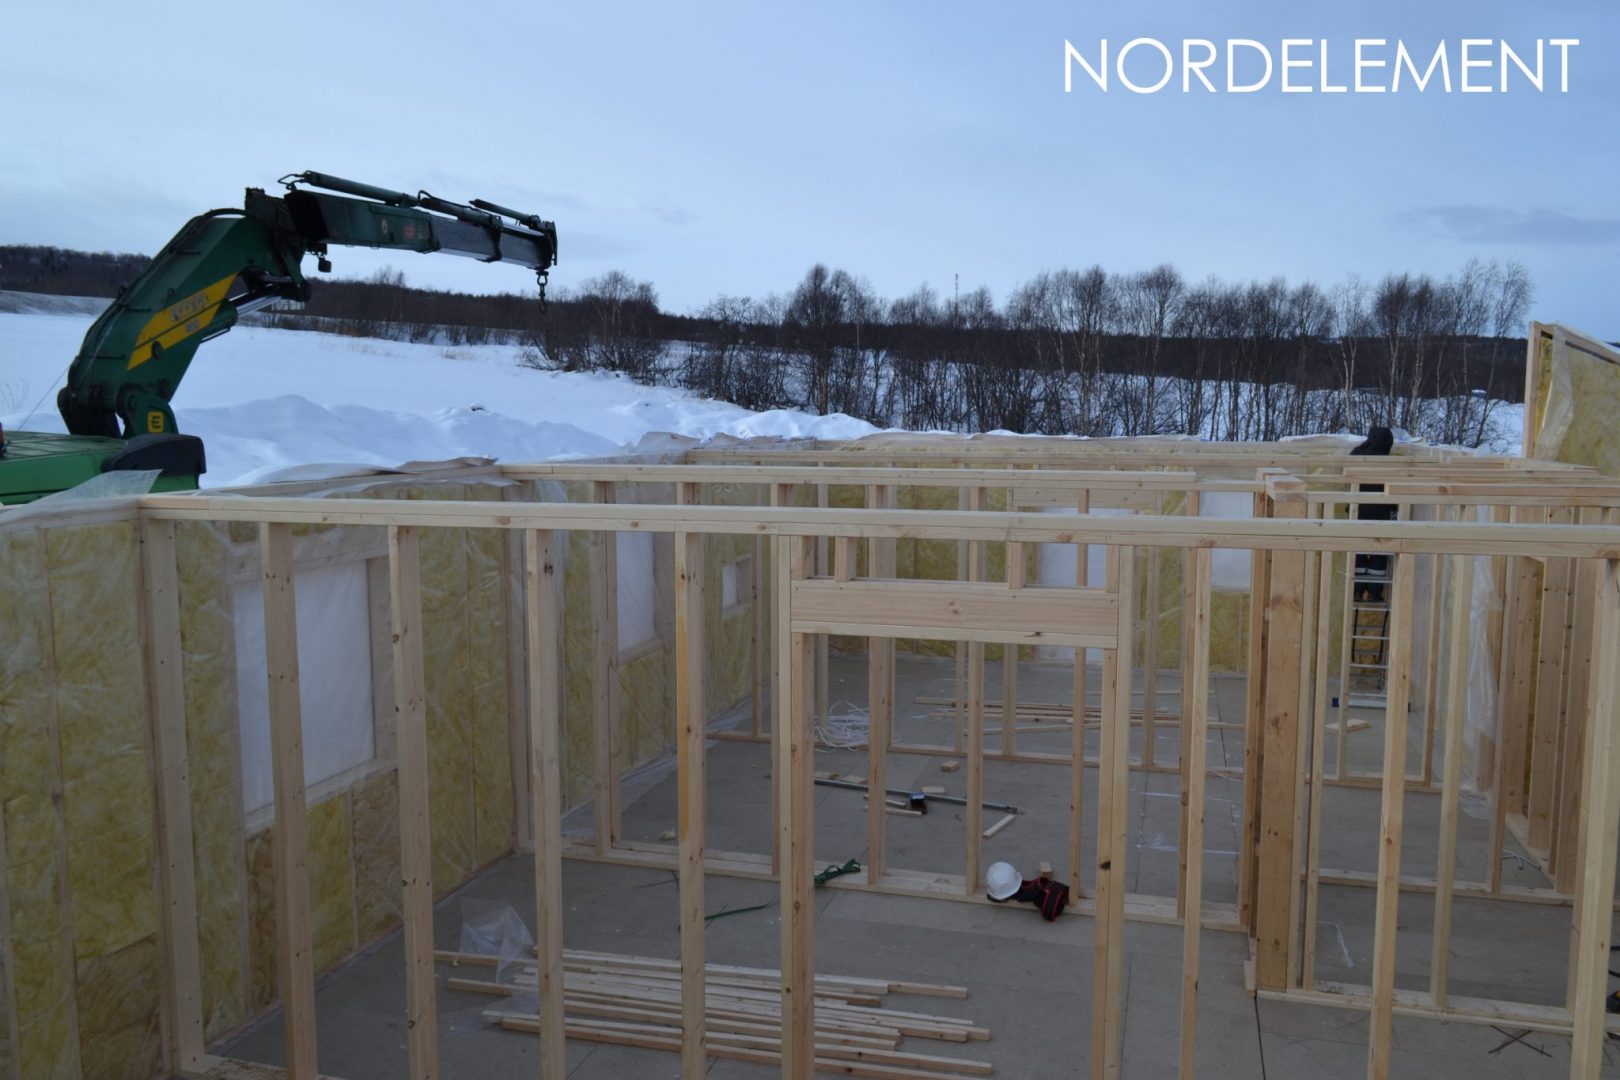  строительство домов по норвежской технологии